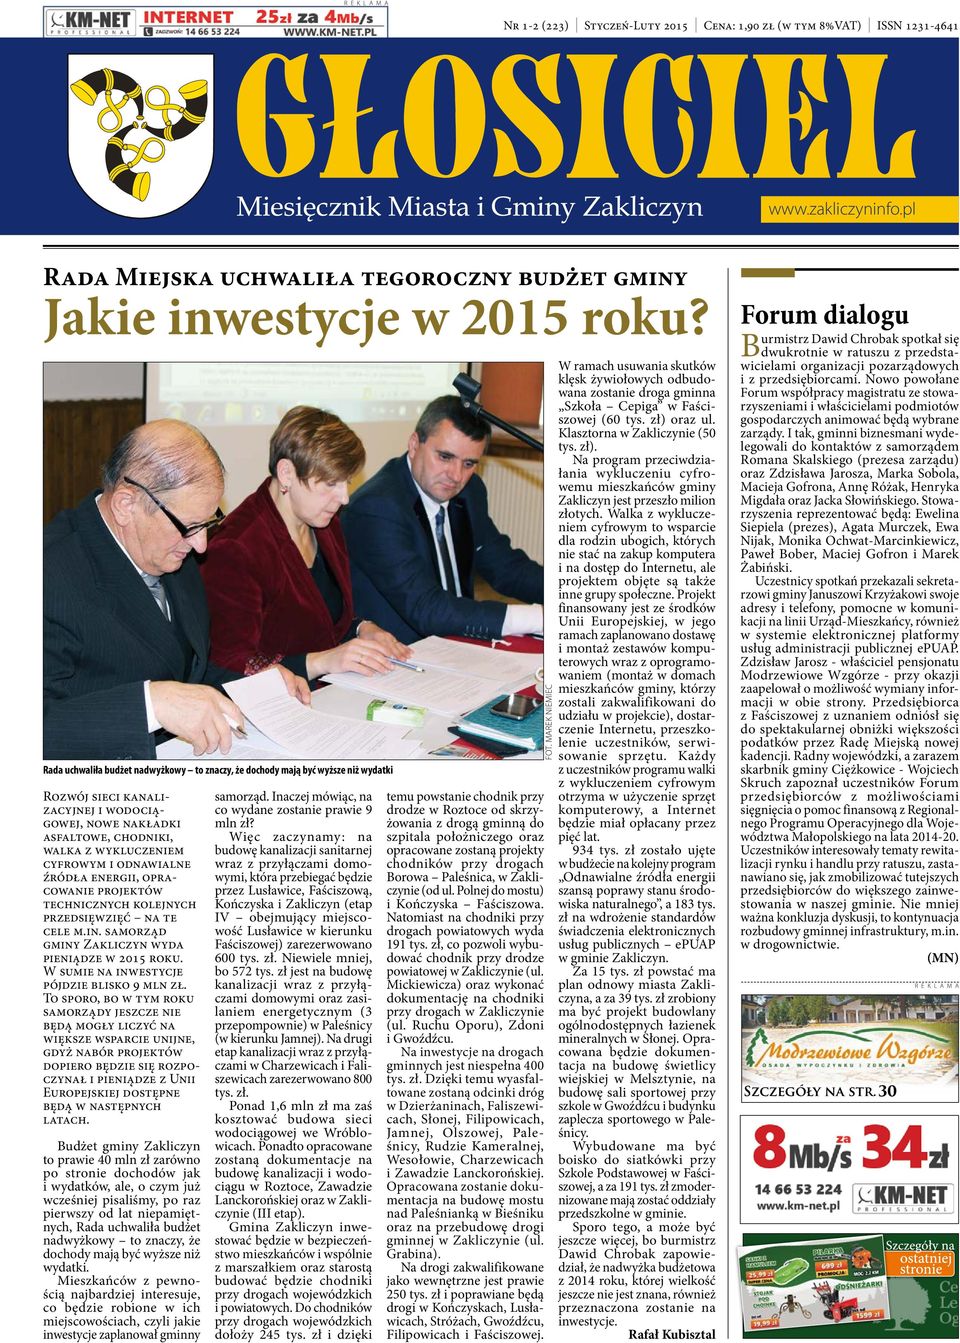 odnawialne źródła energii, opracowanie projektów technicznych kolejnych przedsięwzięć na te cele m.in. samorząd gminy Zakliczyn wyda pieniądze w 2015 roku.